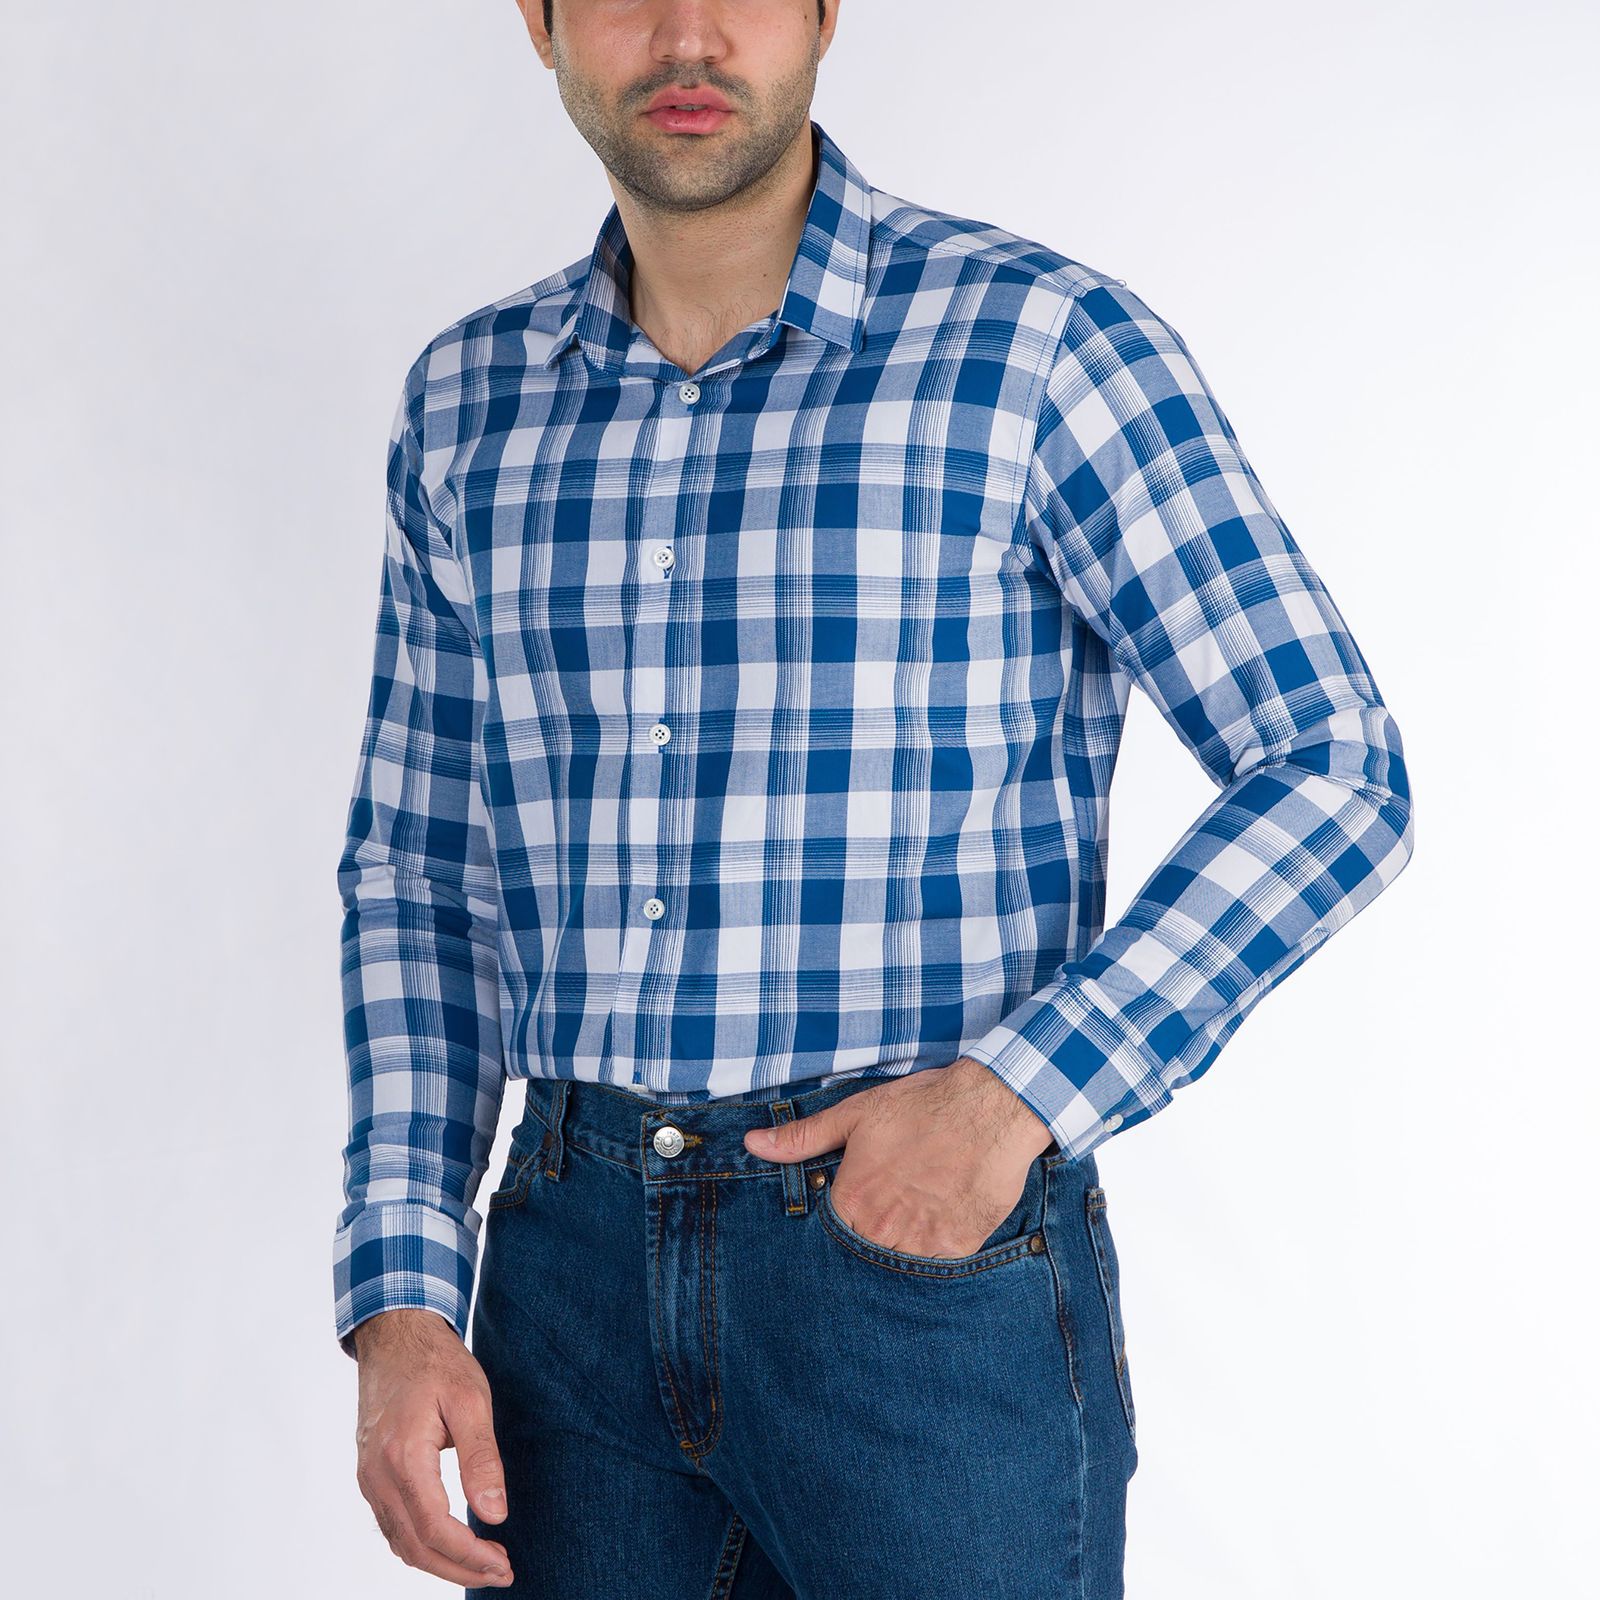 پیراهن آستین بلند مردانه باینت مدل 2261701-58 -  - 1